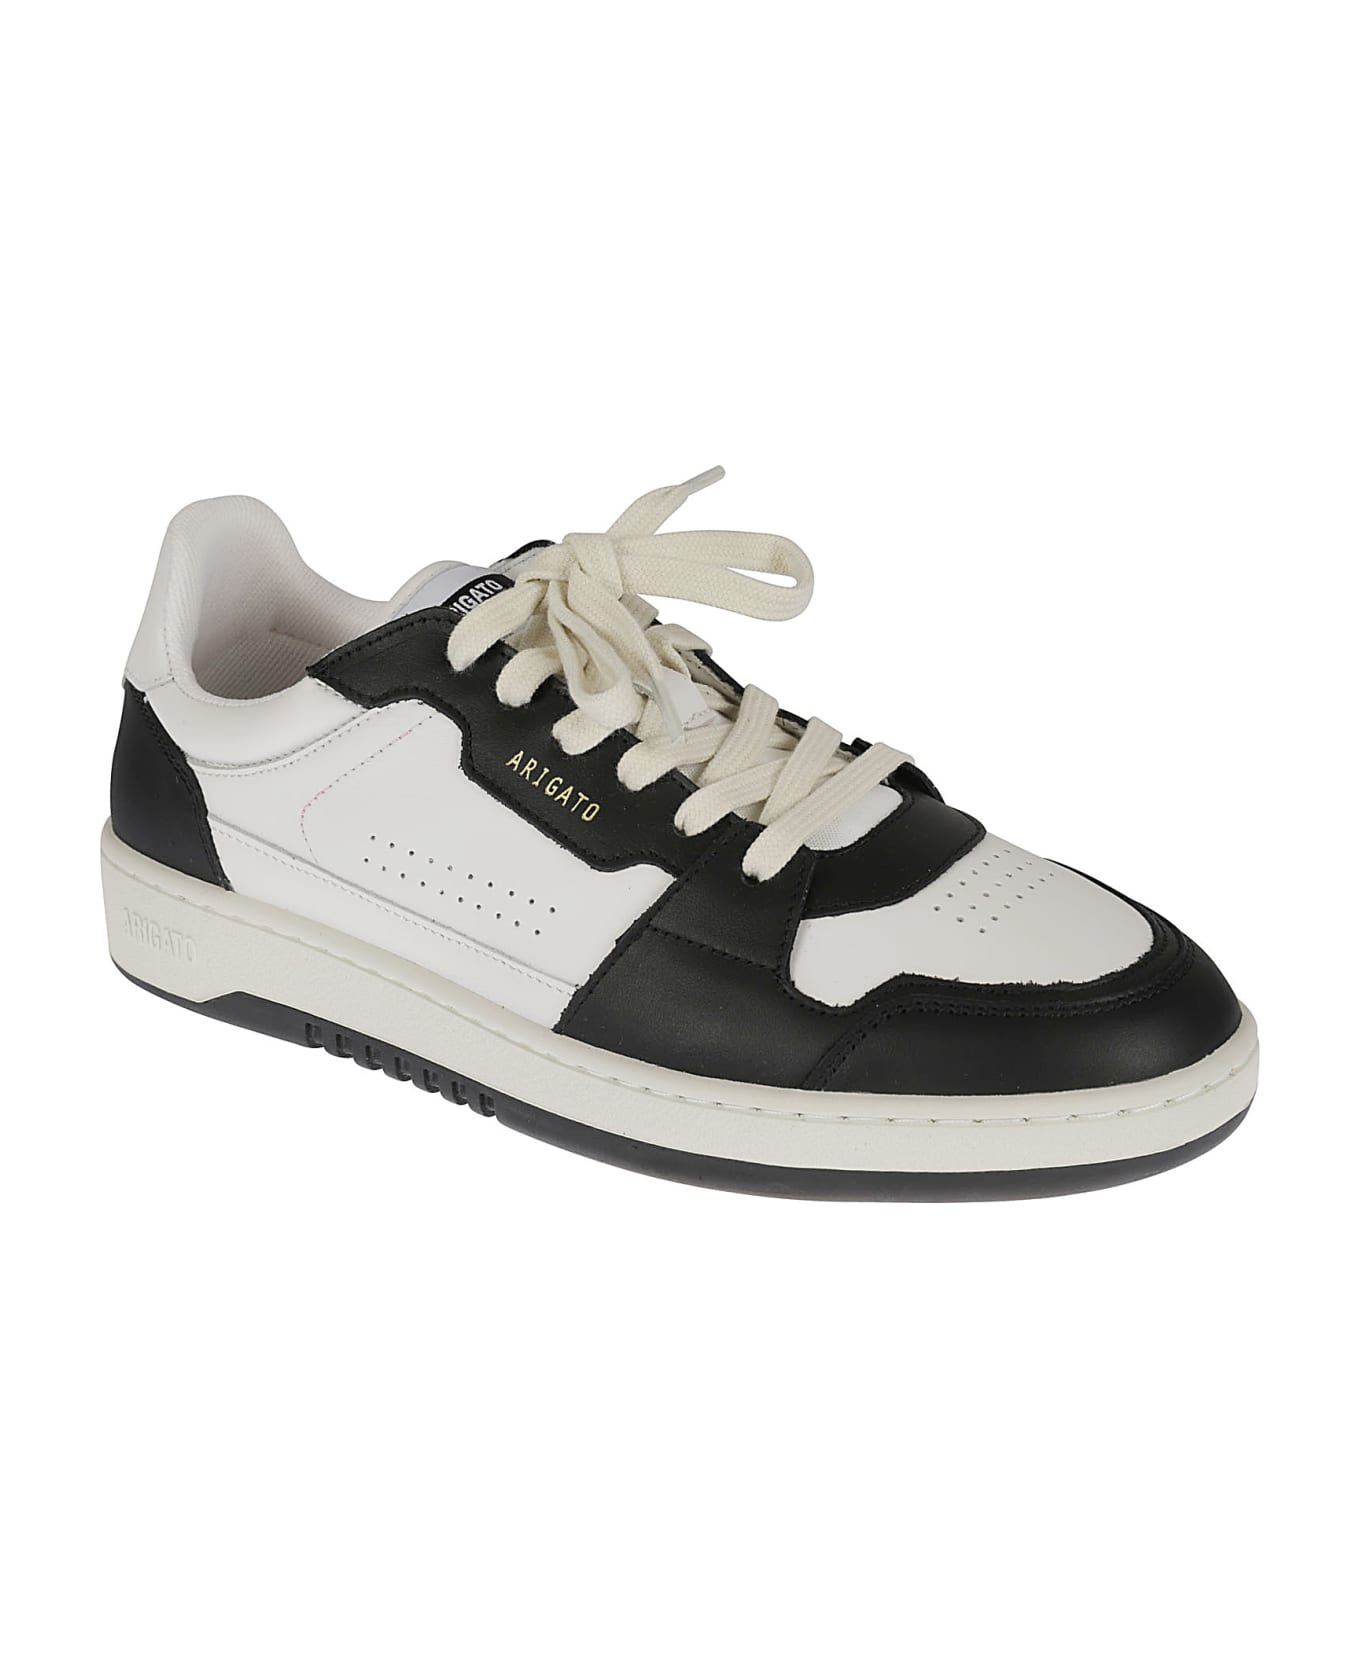 Axel Arigato Dice Lo Sneakers - White/Black